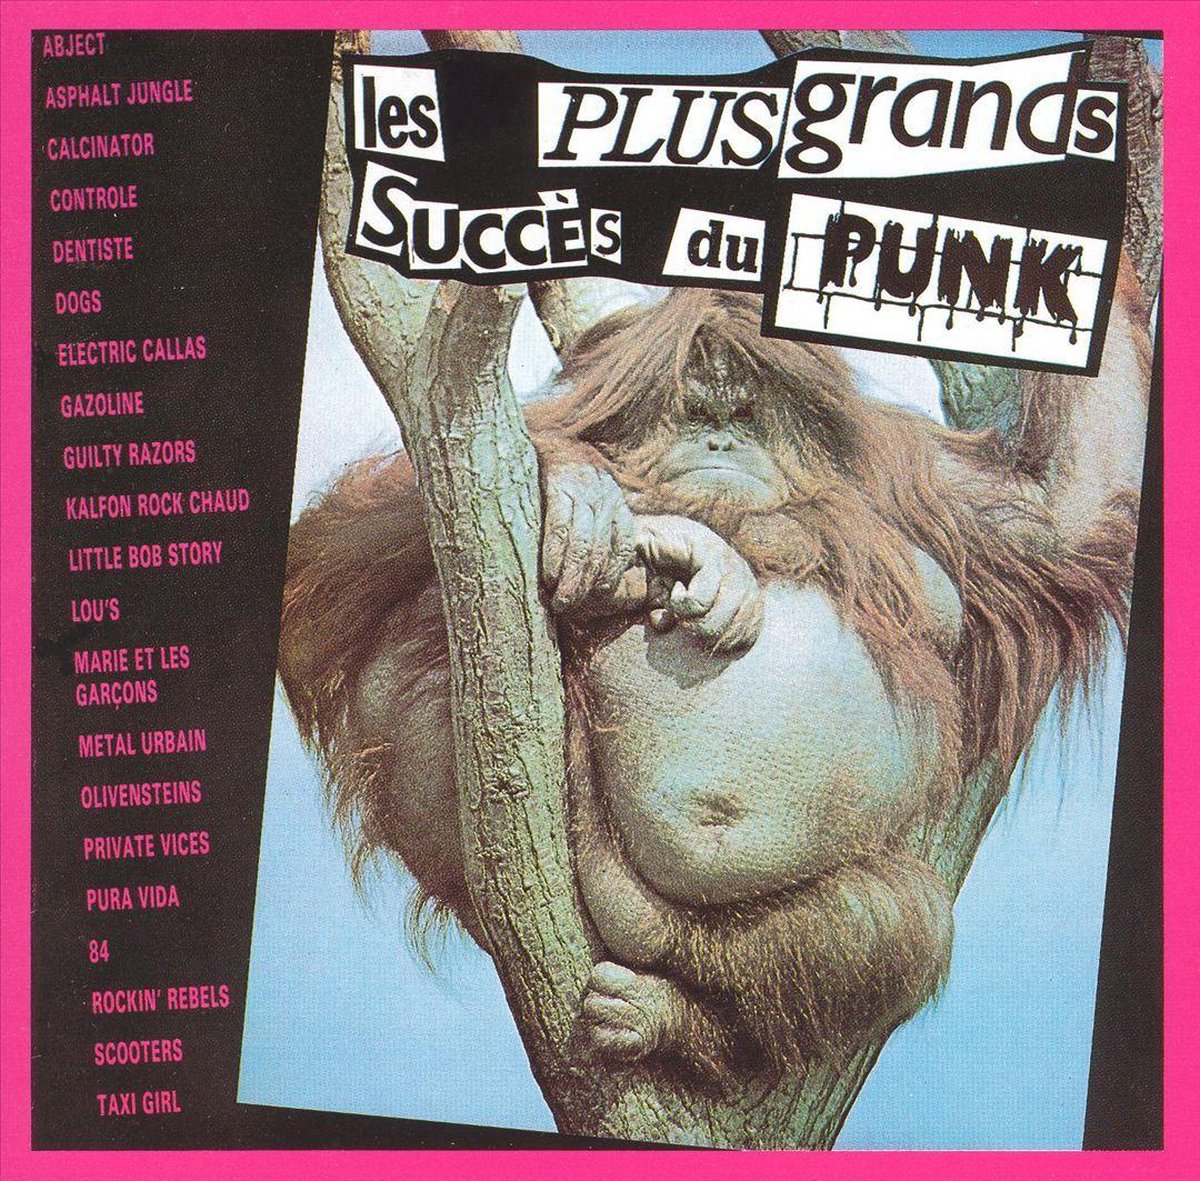 Plus Grands Succès du Punk - various artists